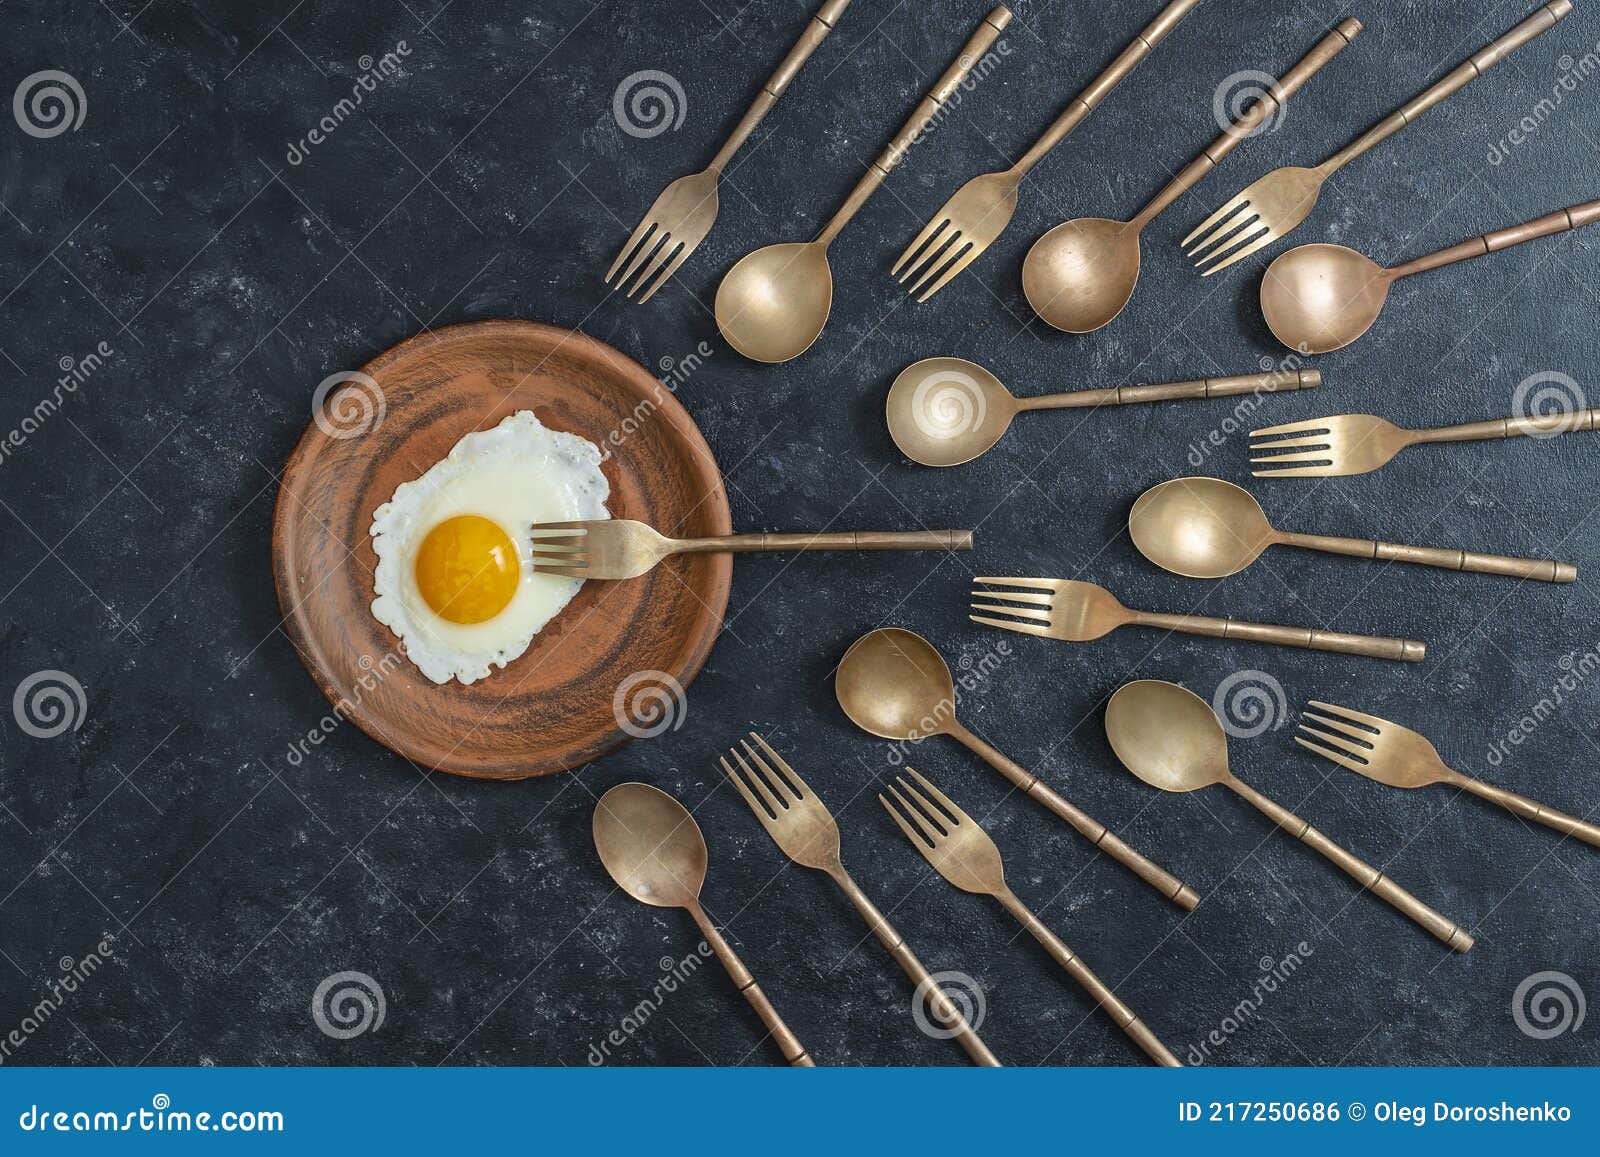 керамическая тарелка с жареным яйцом и латунной вилкой и ложками .